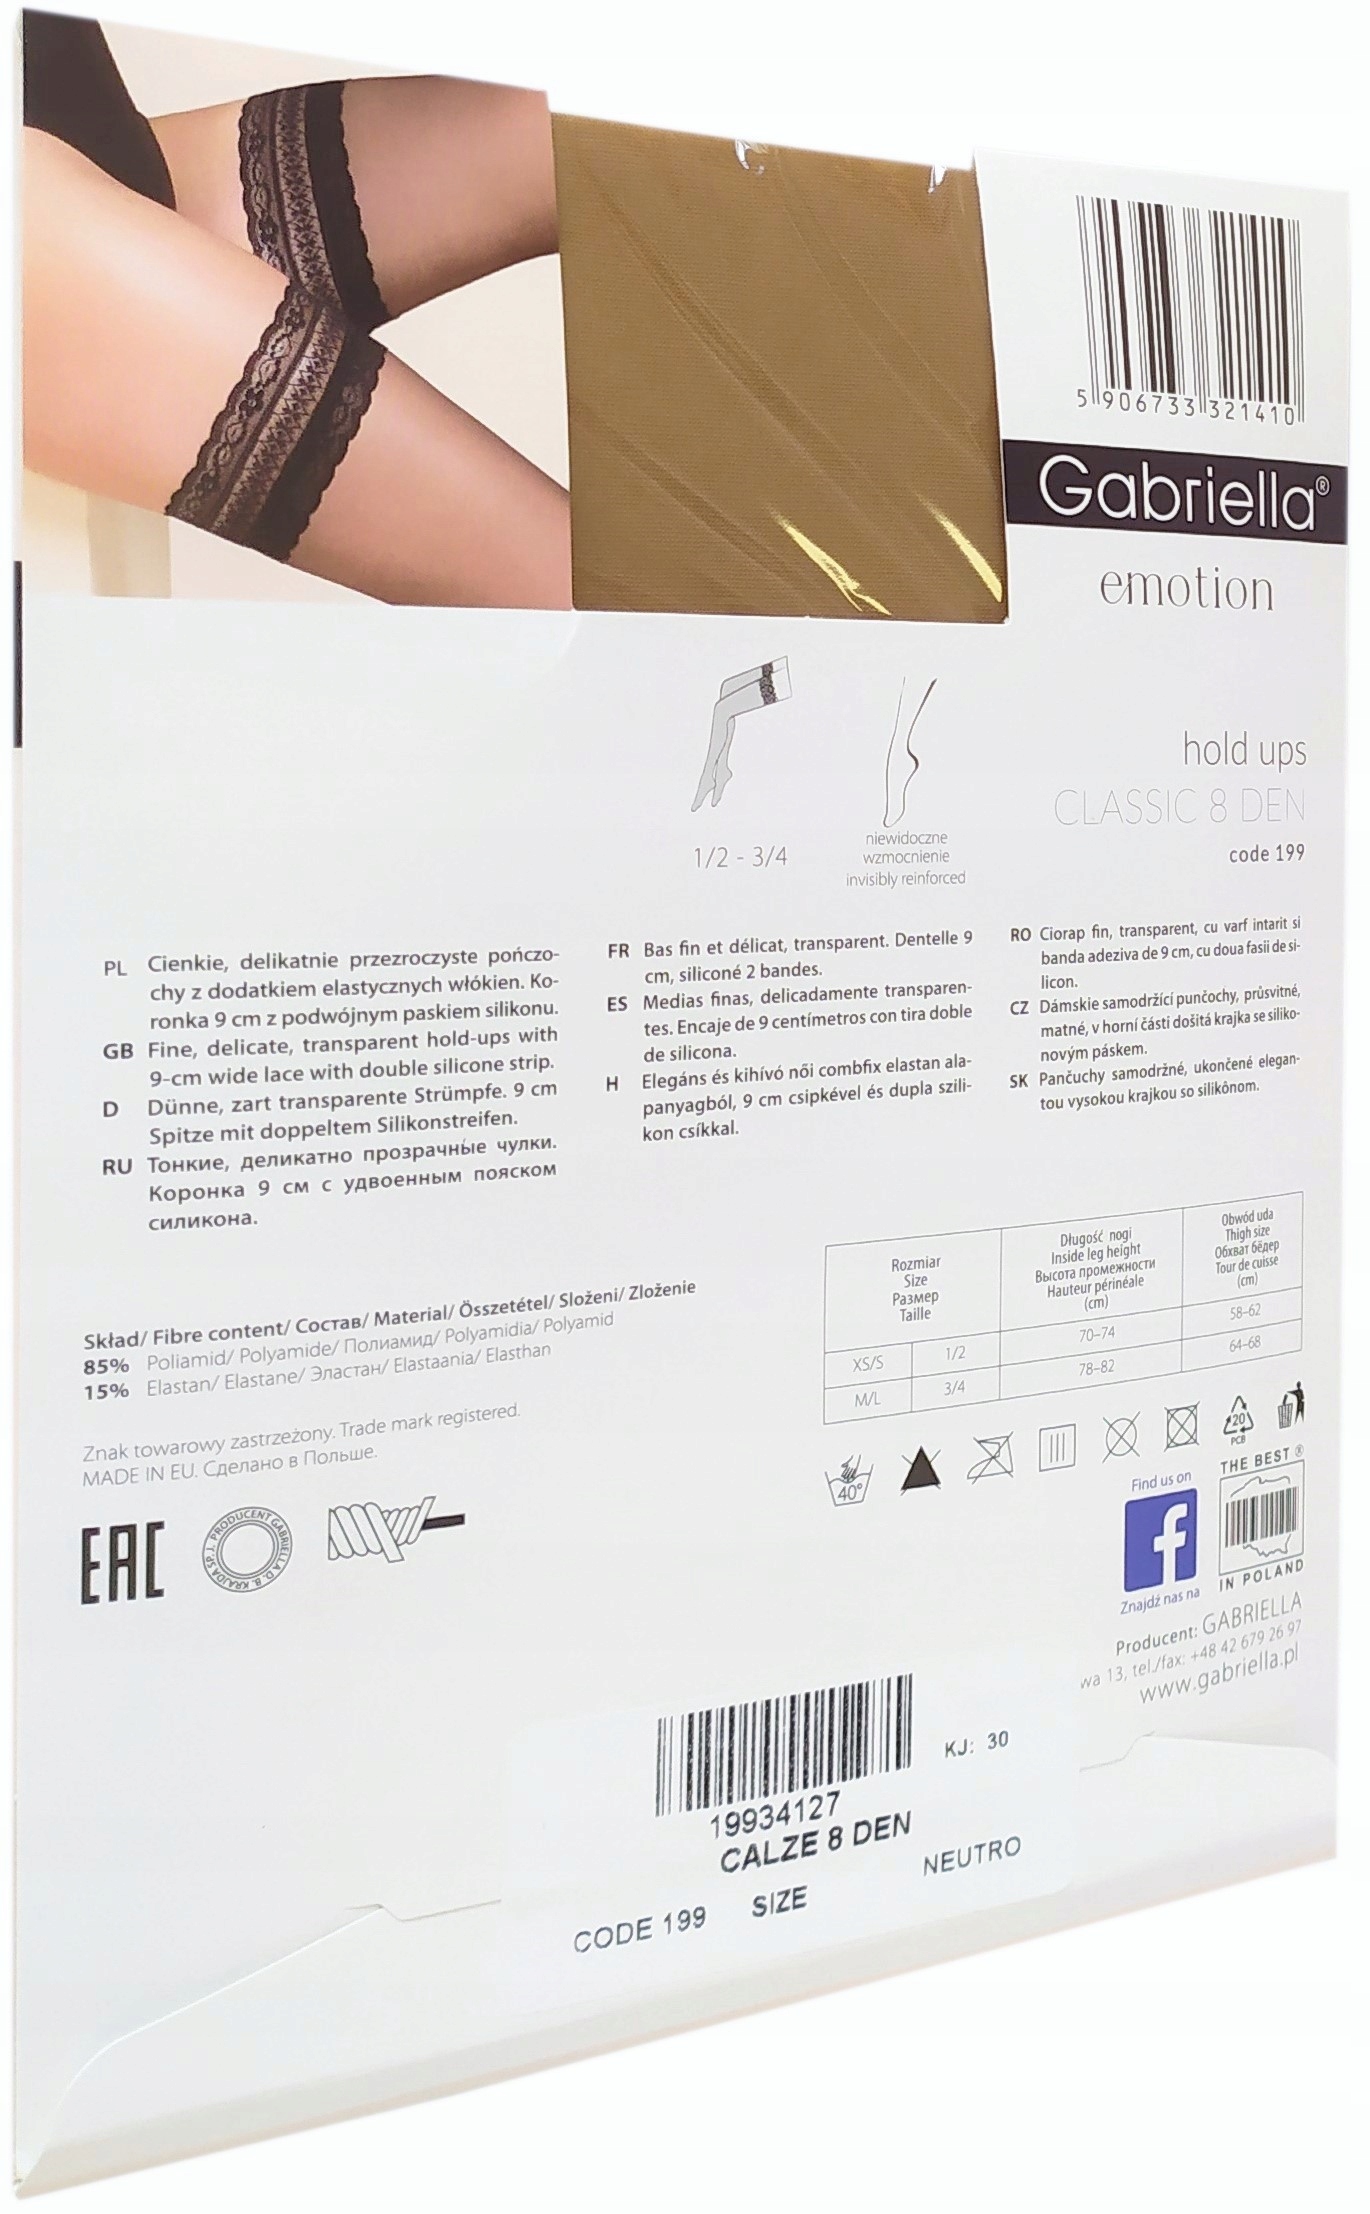 мереживні панчохи GABRIELLA 8 den Neutro 3/4 код виробника 199